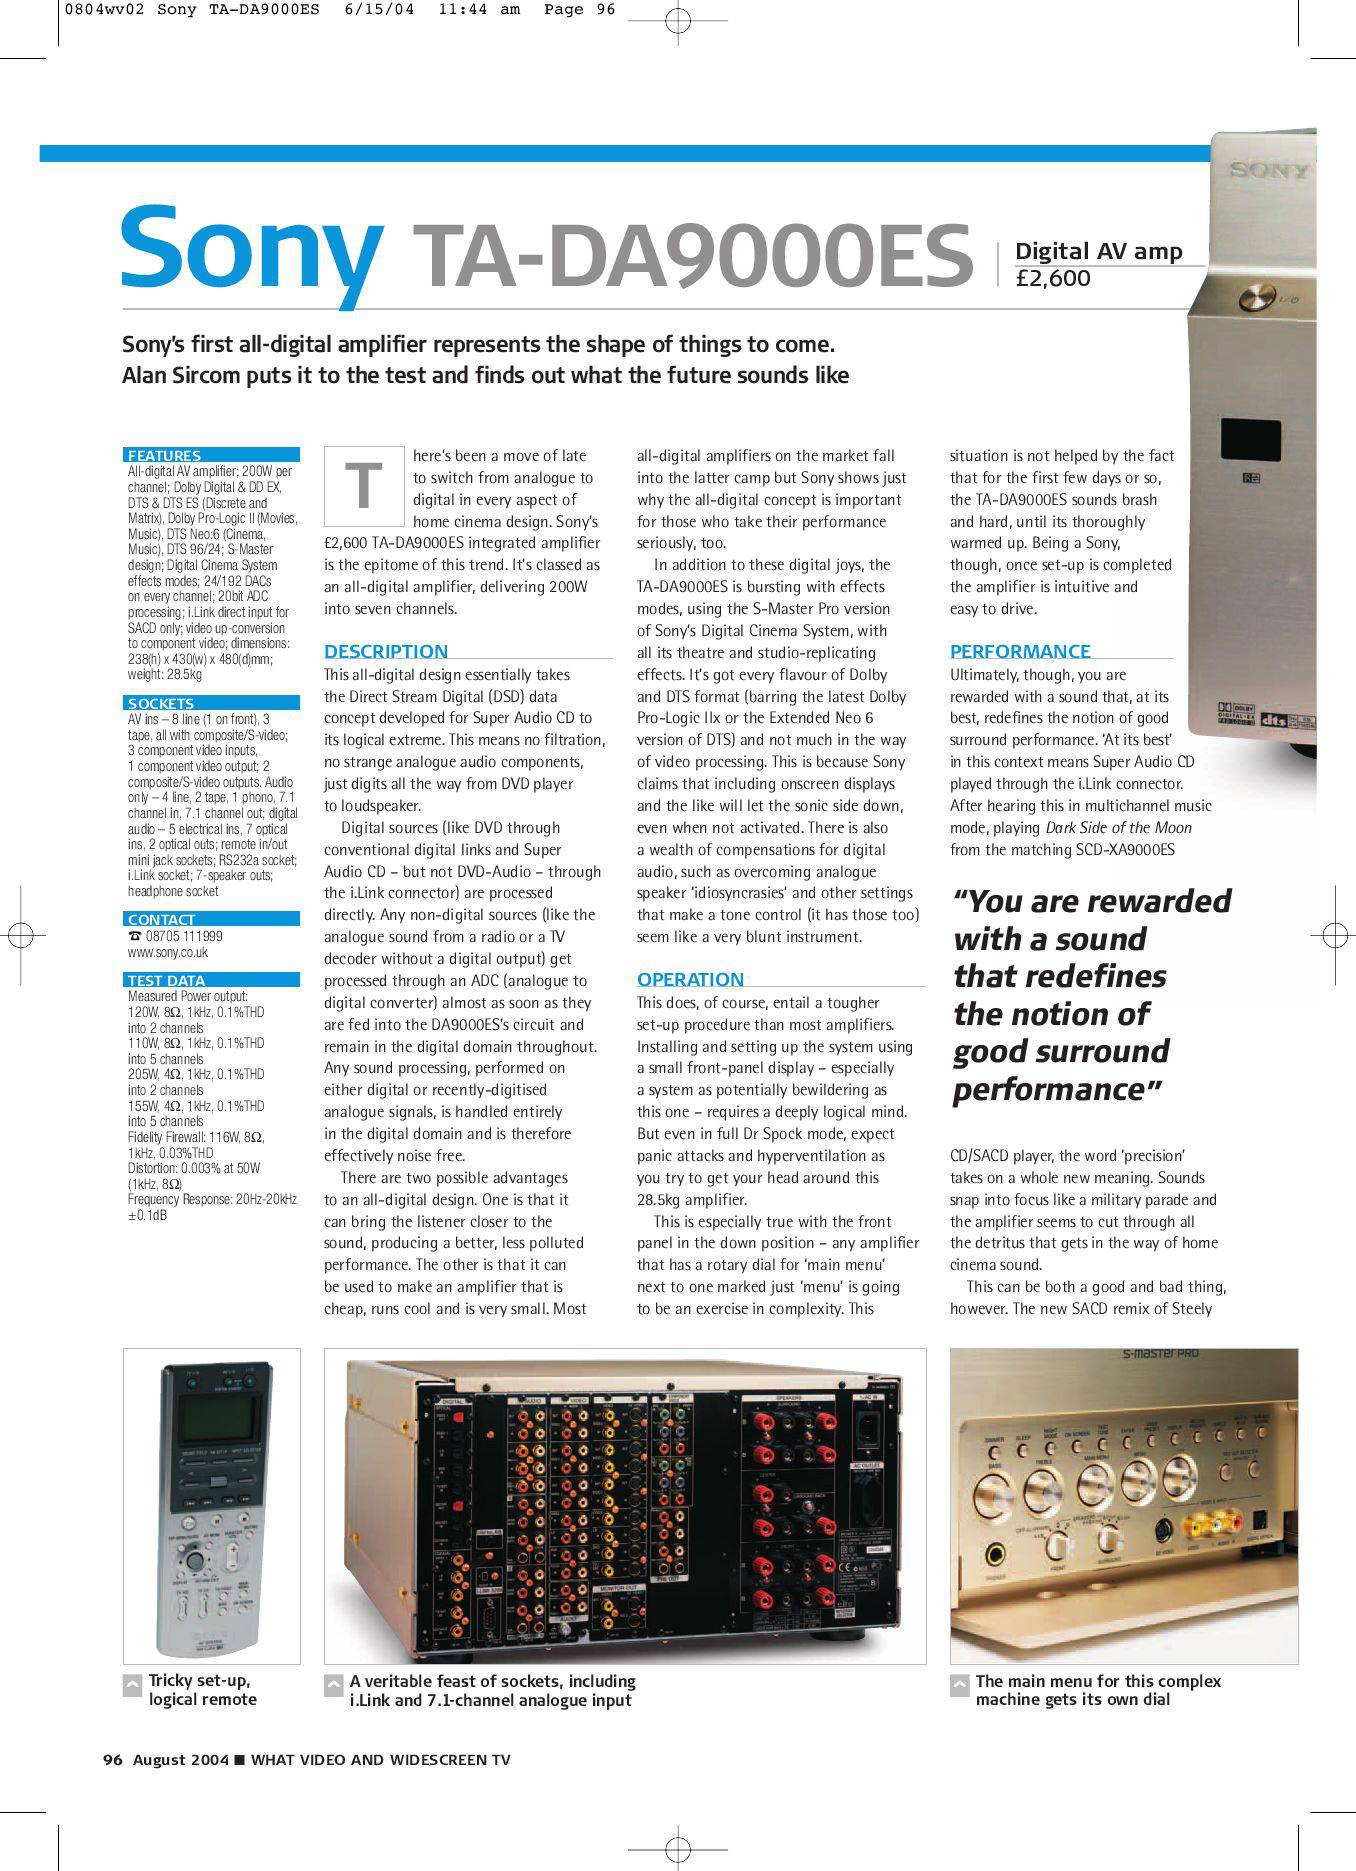 Sony TA-DA9000ES specs, manual & images